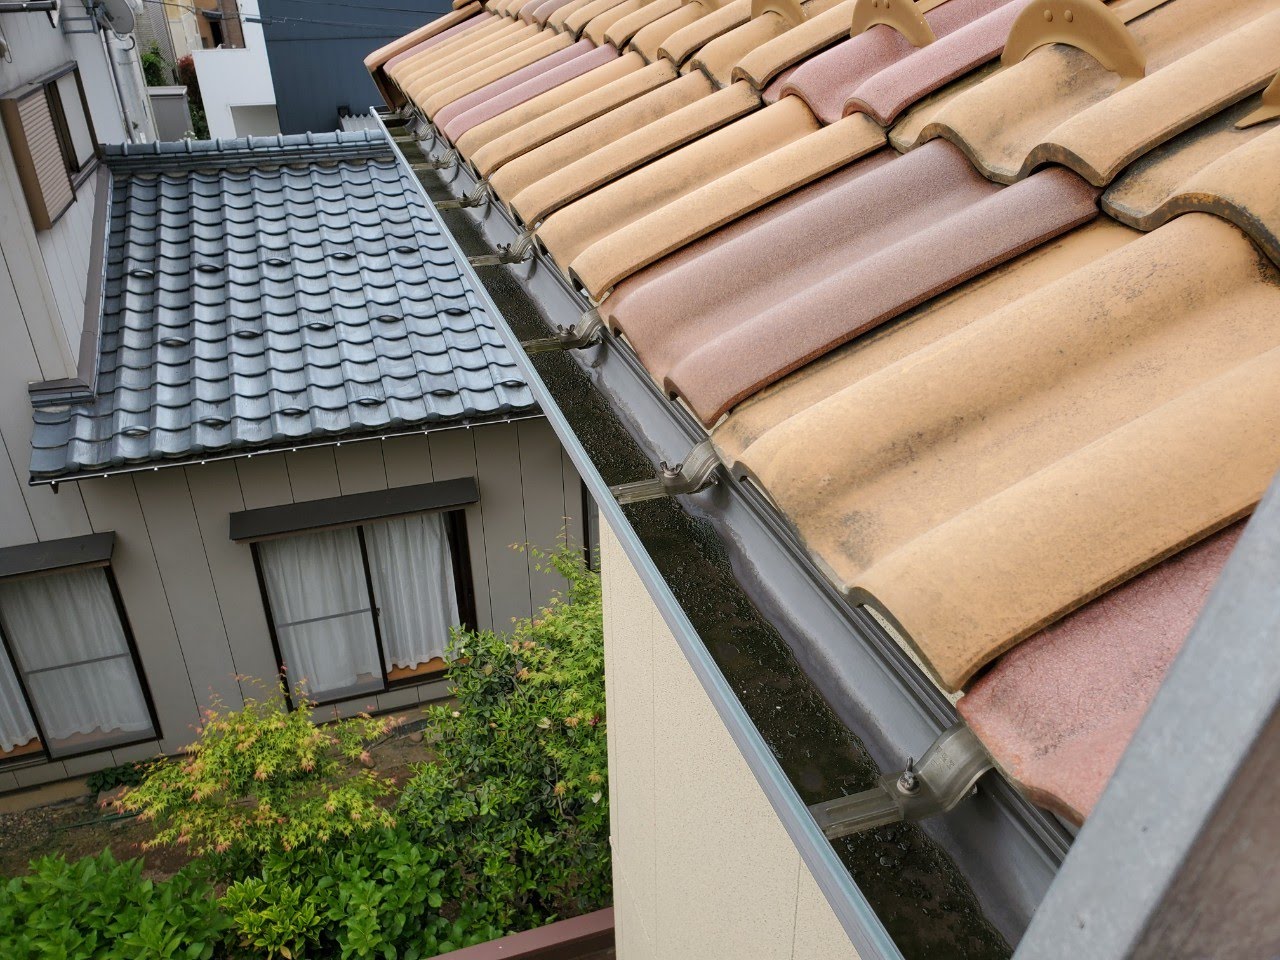 新潟市秋葉区にて大屋根の軒樋内清掃を行いました